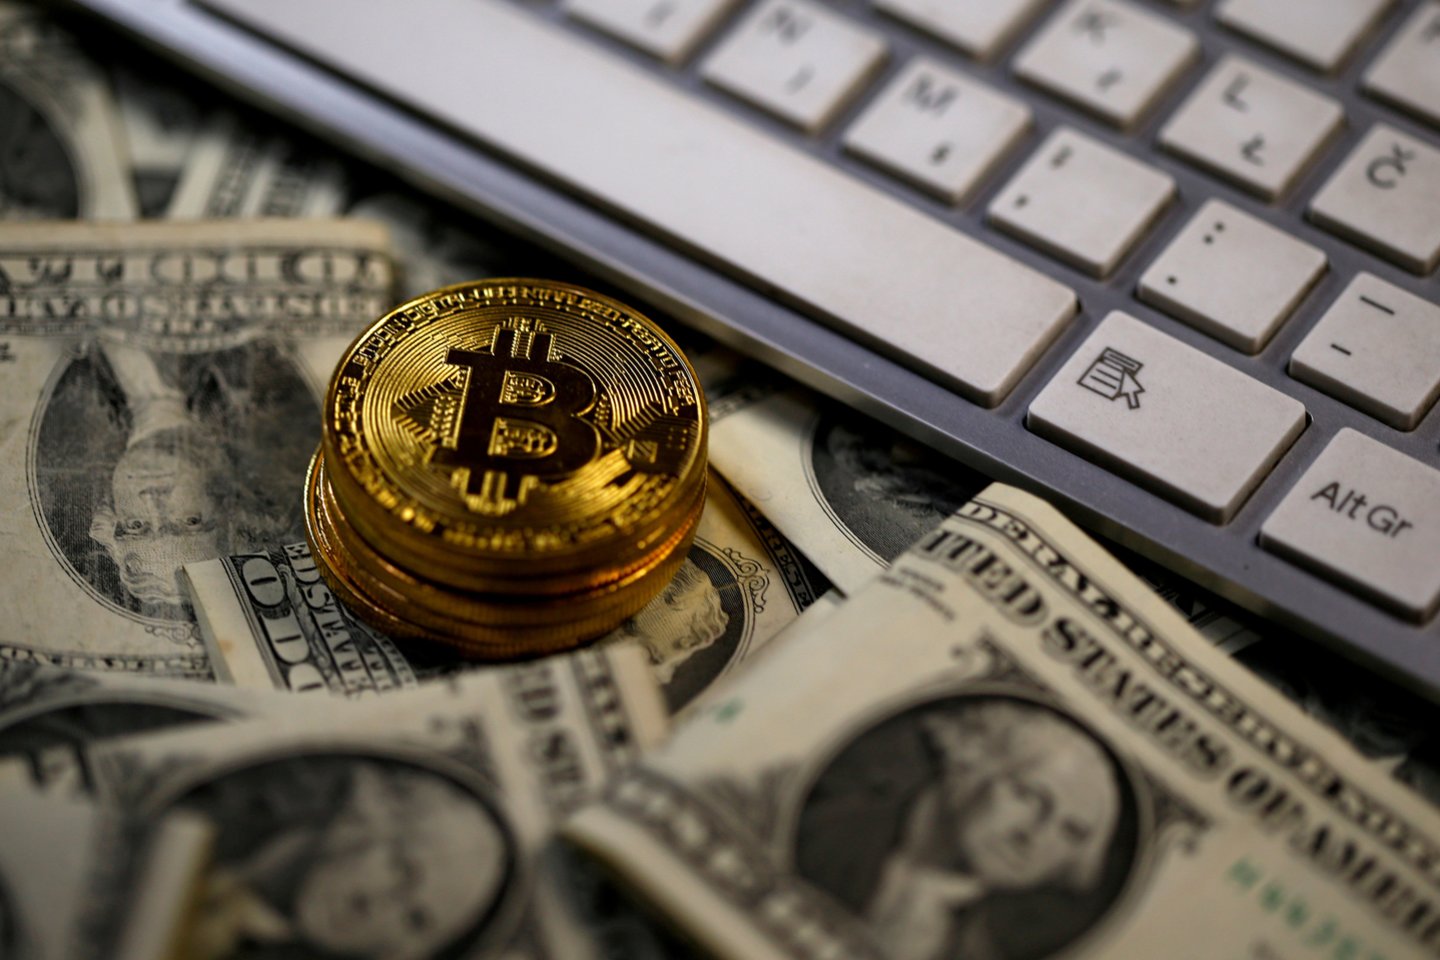 Kripto investicijų apžvalga, bitkoinas kasimas - Cabde